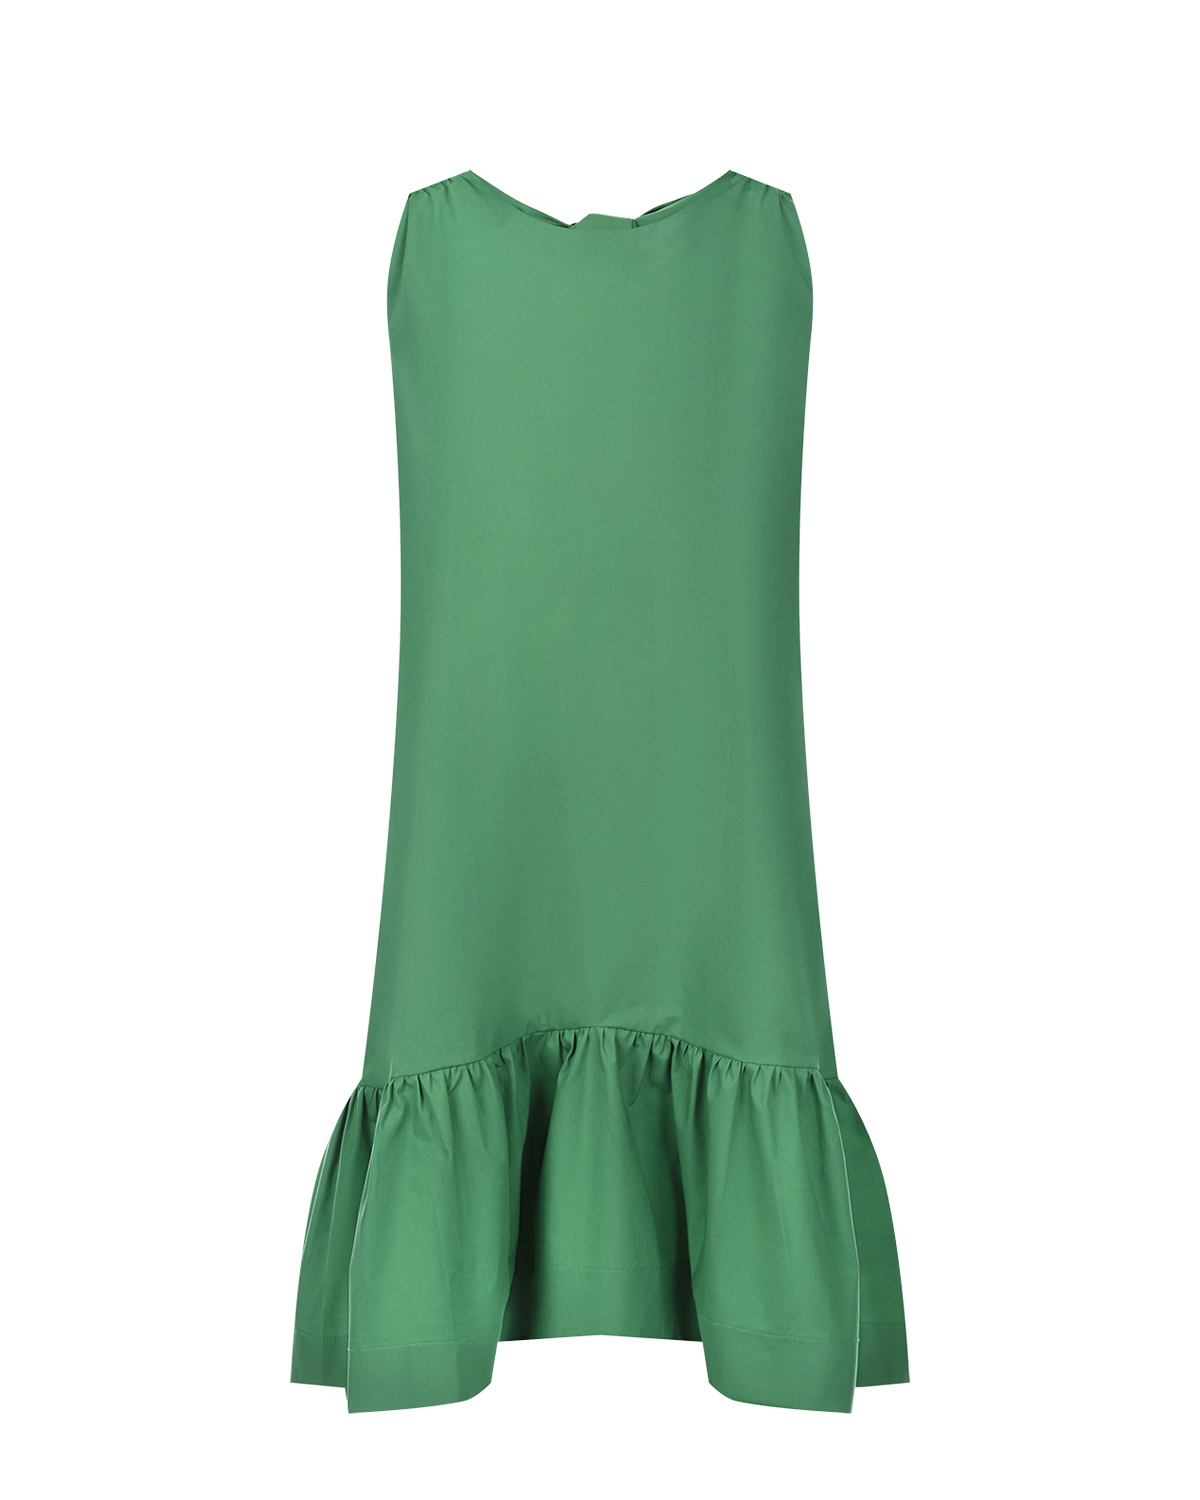 Зеленое платье с бантами на спинке Attesa, размер 40, цвет зеленый - фото 1